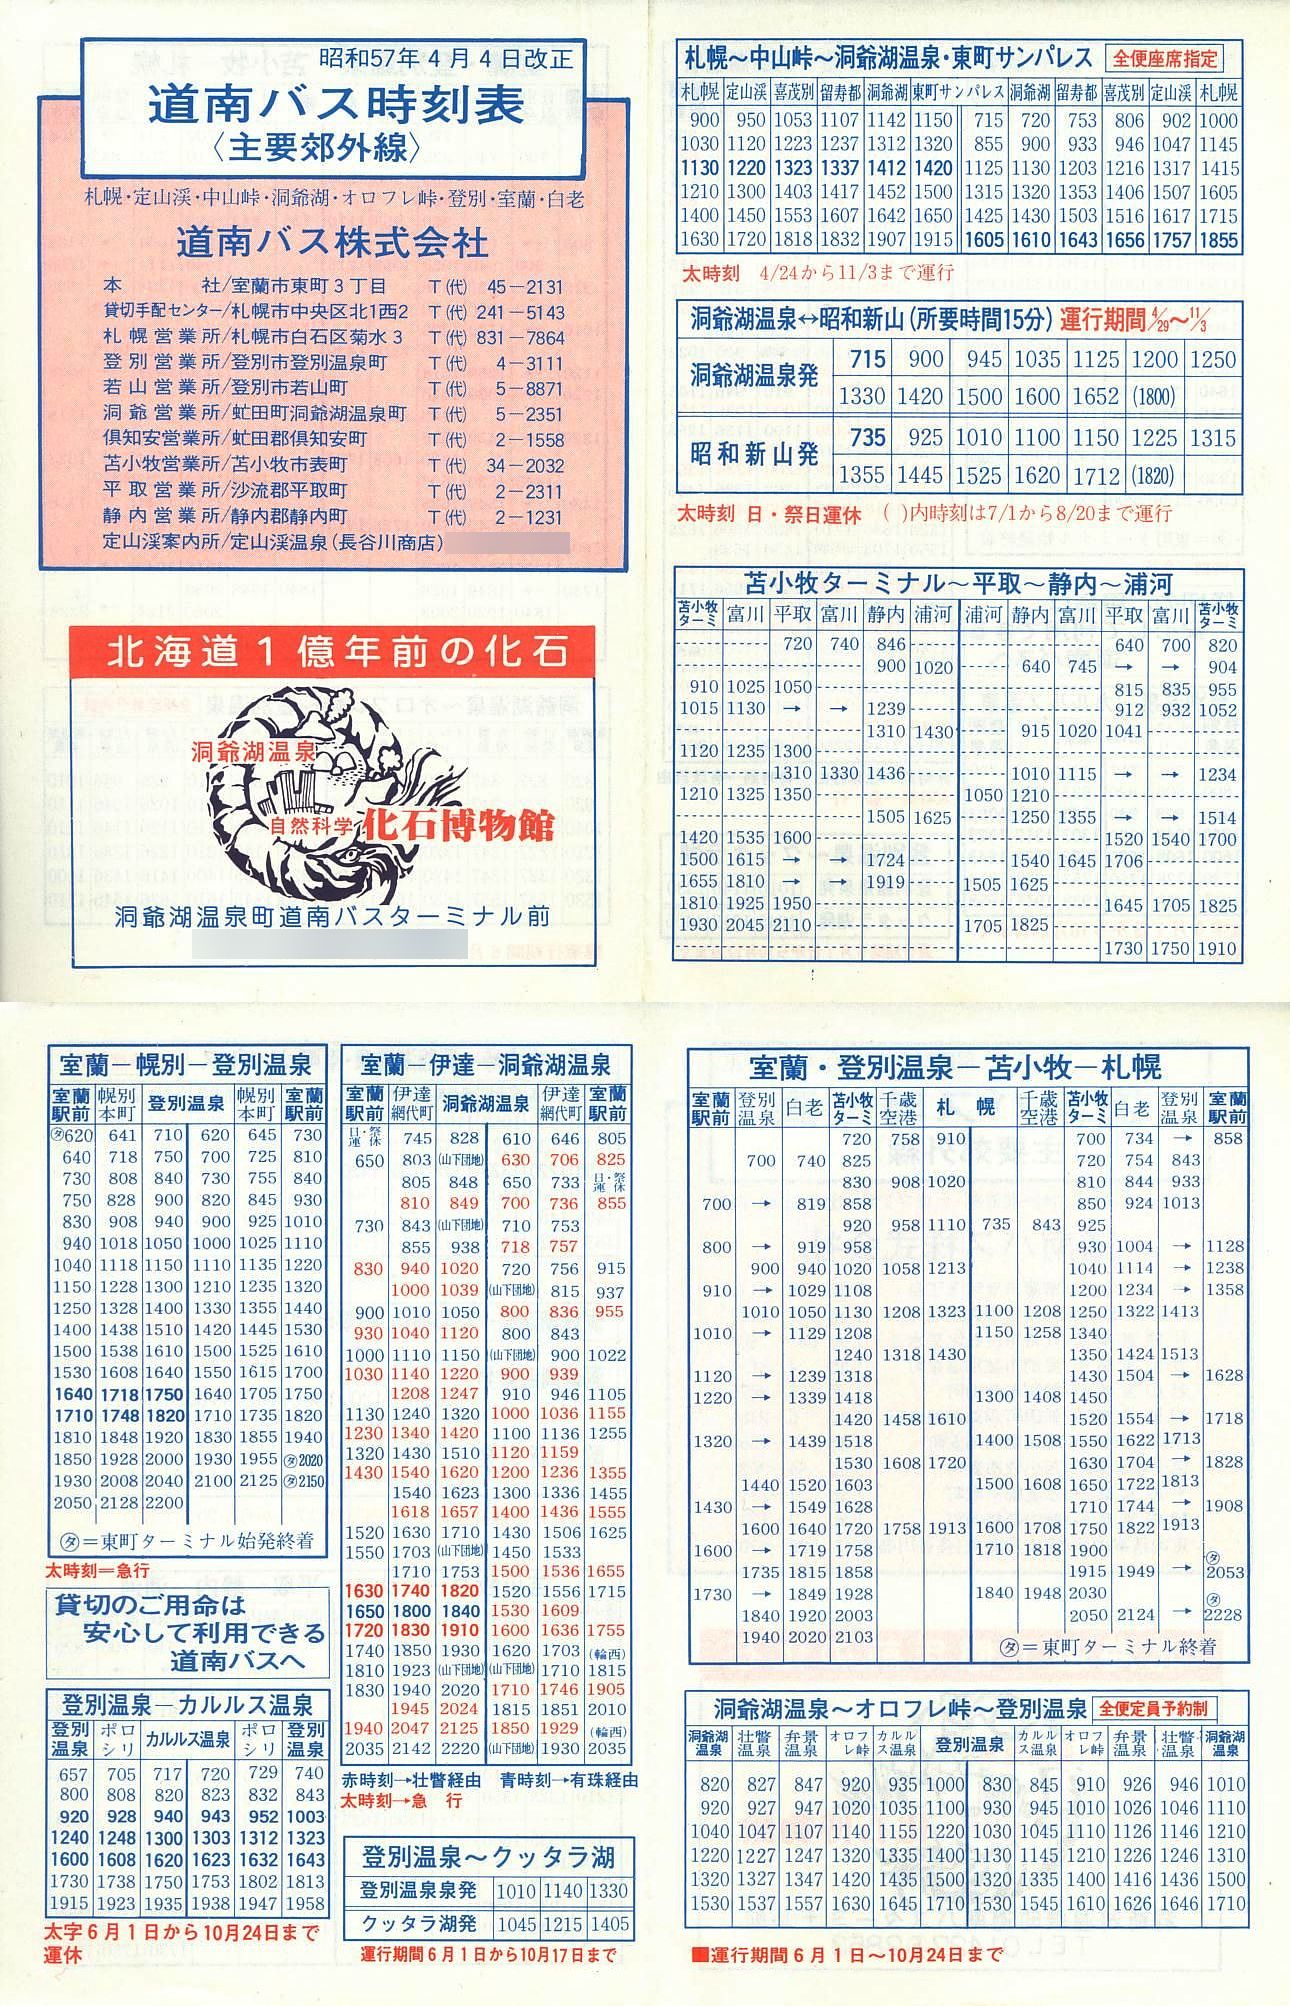 1982-04-04改正_道南バス_主要郊外線時刻表